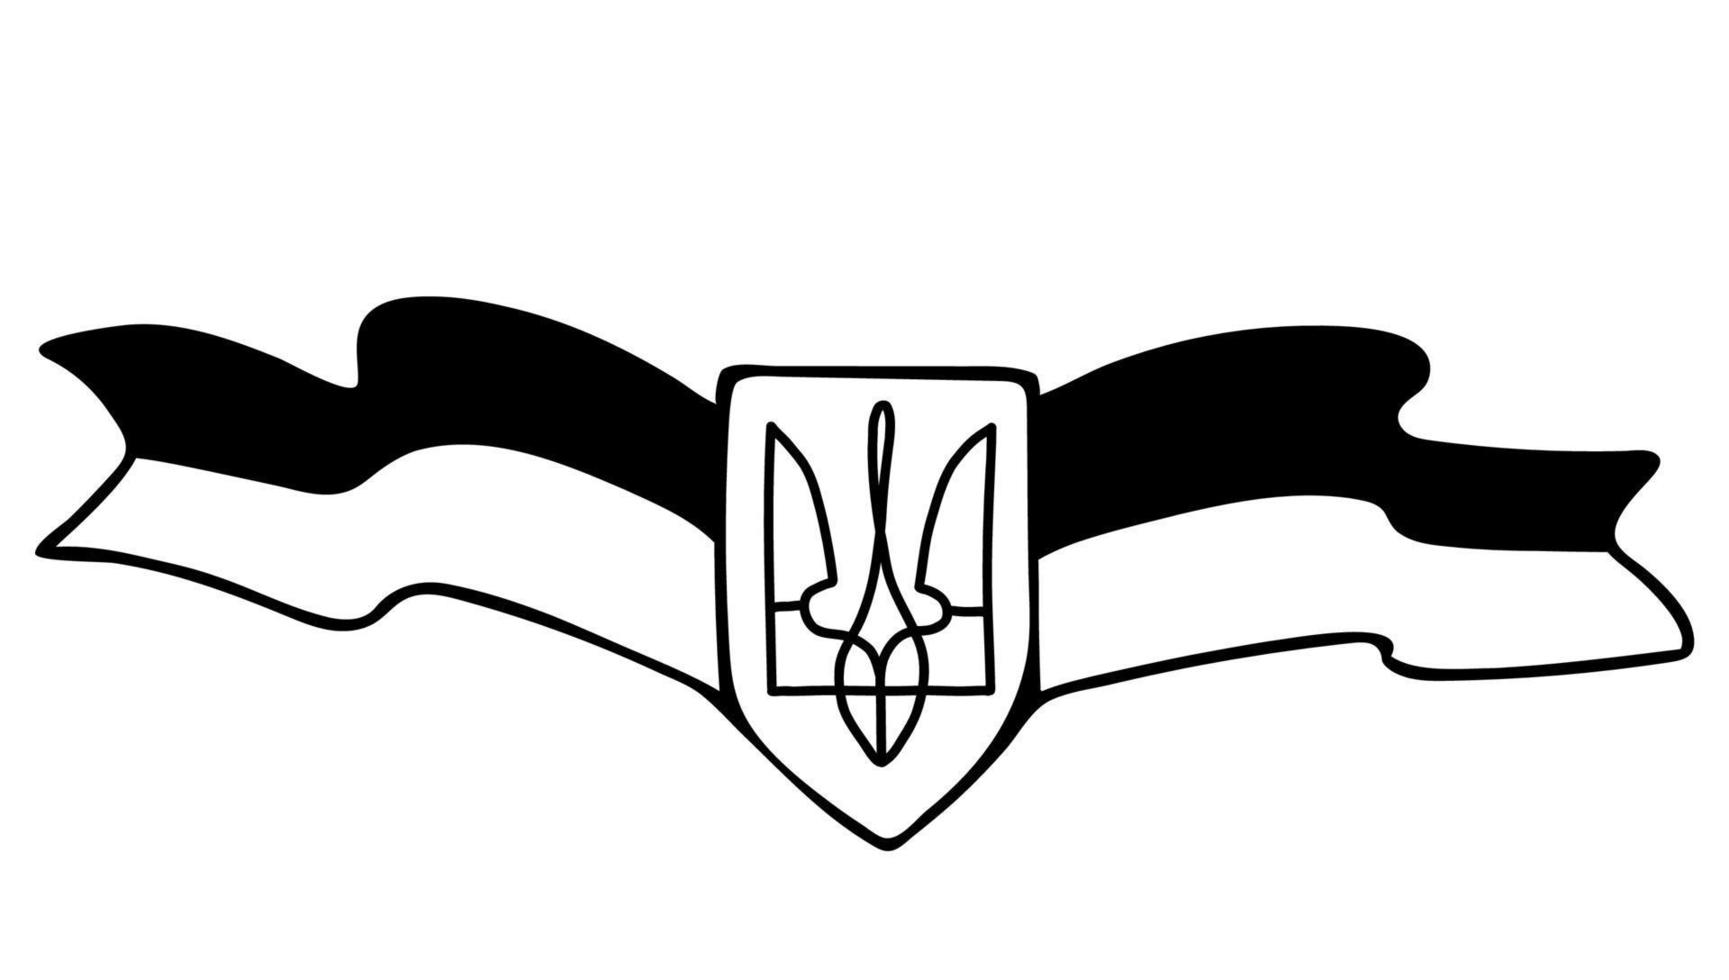 símbolo ucraniano. brasão de armas do país é tridente e bandeira. ilustração vetorial. doodle linear desenhado à mão. para design e decoração de temas ucranianos vetor